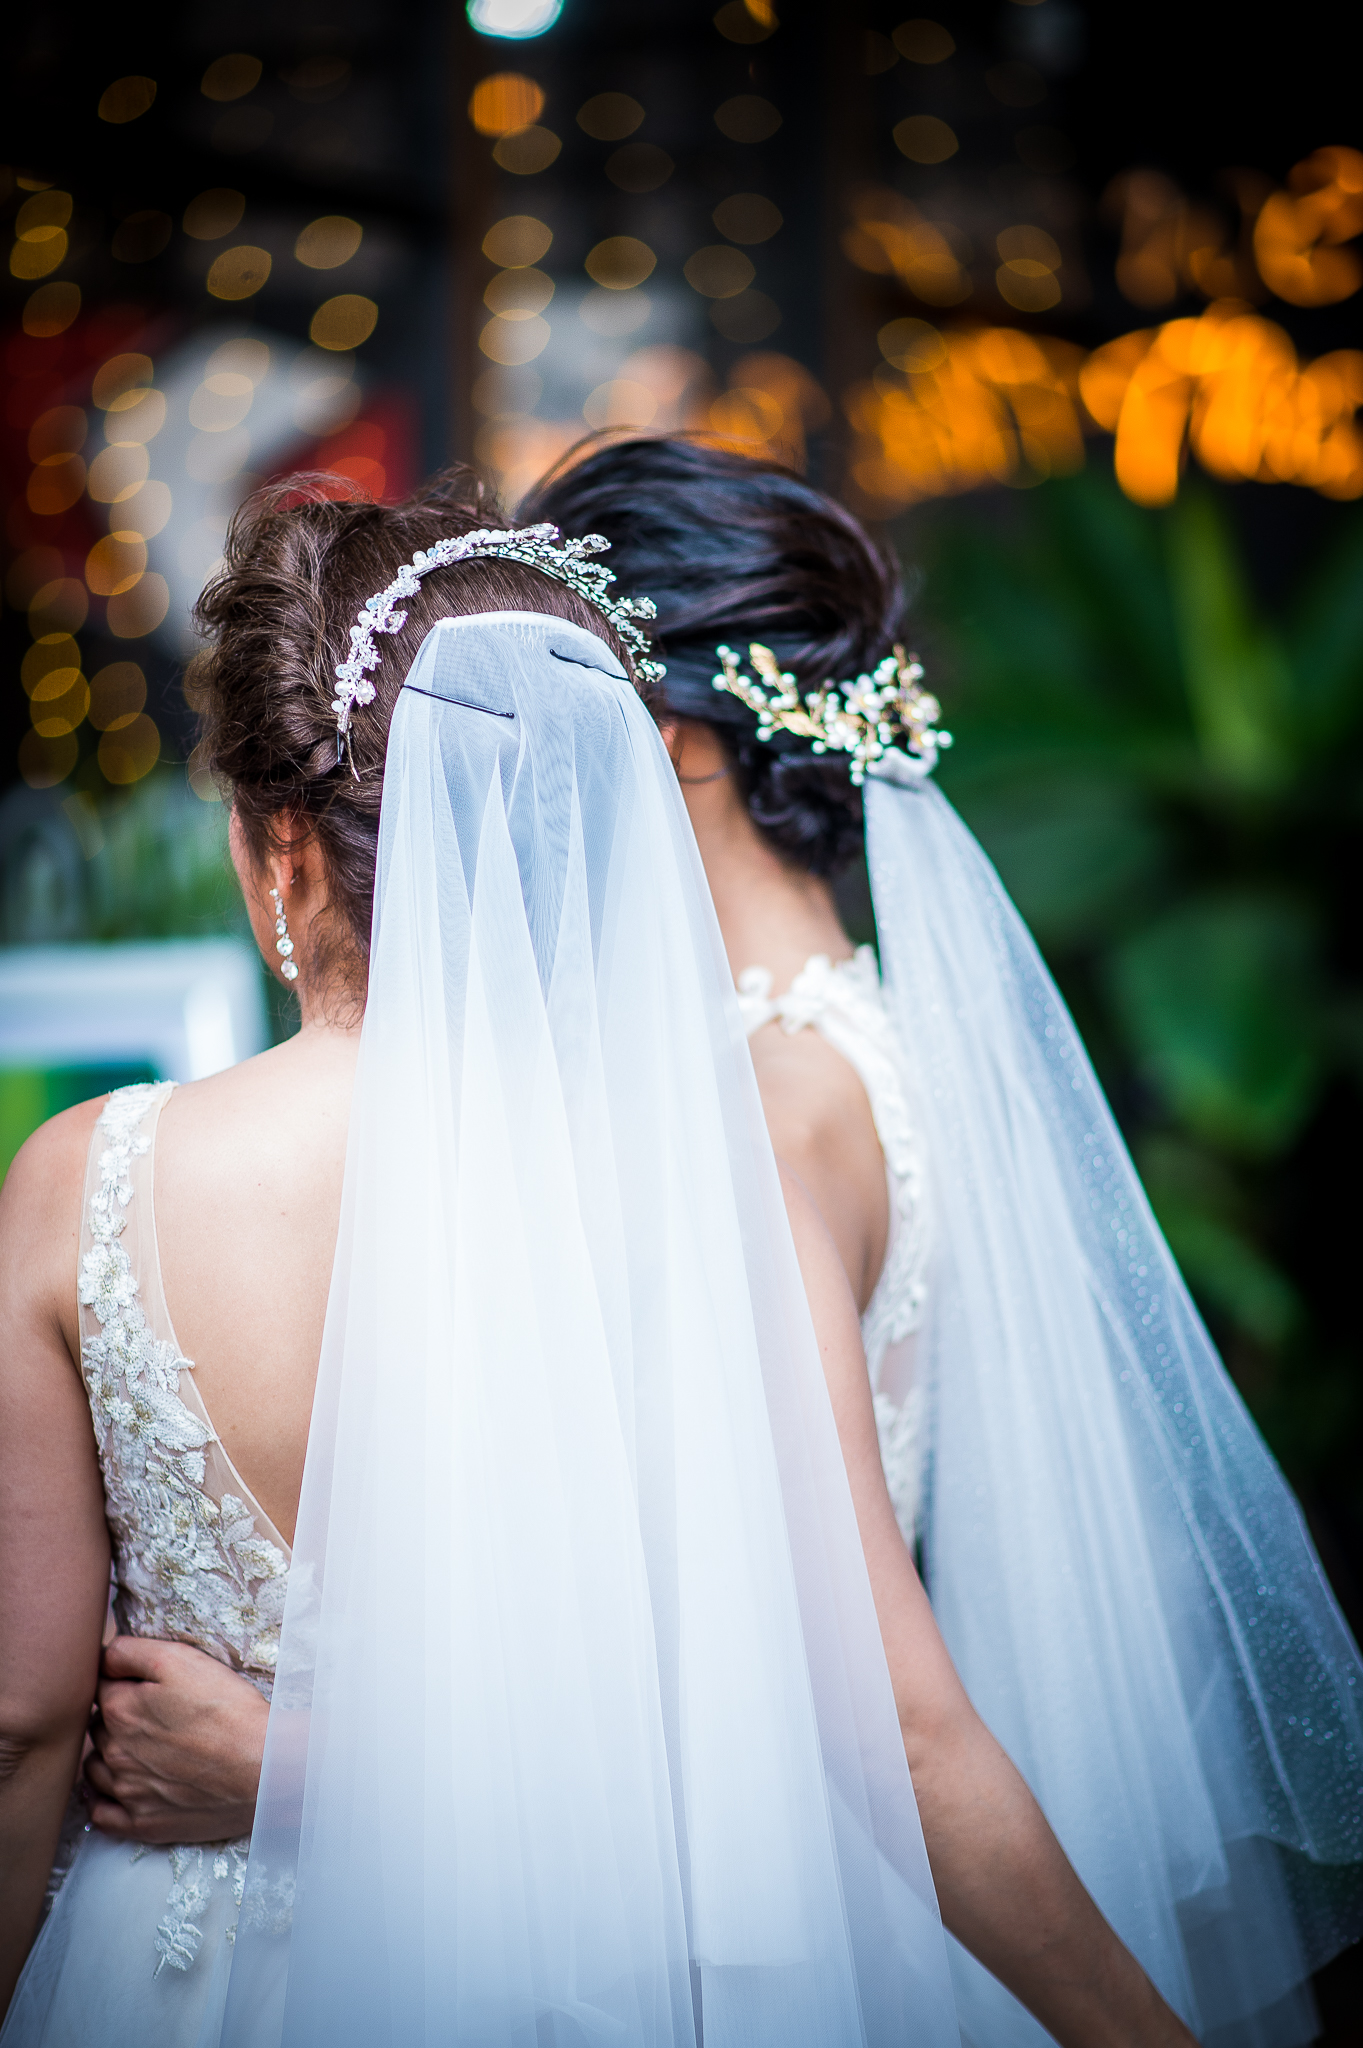 งานแต่งงานหญิงรักหญิง งานแต่งงานเพศเดียวกัน lesbian same sex wedding thailand wedding planner